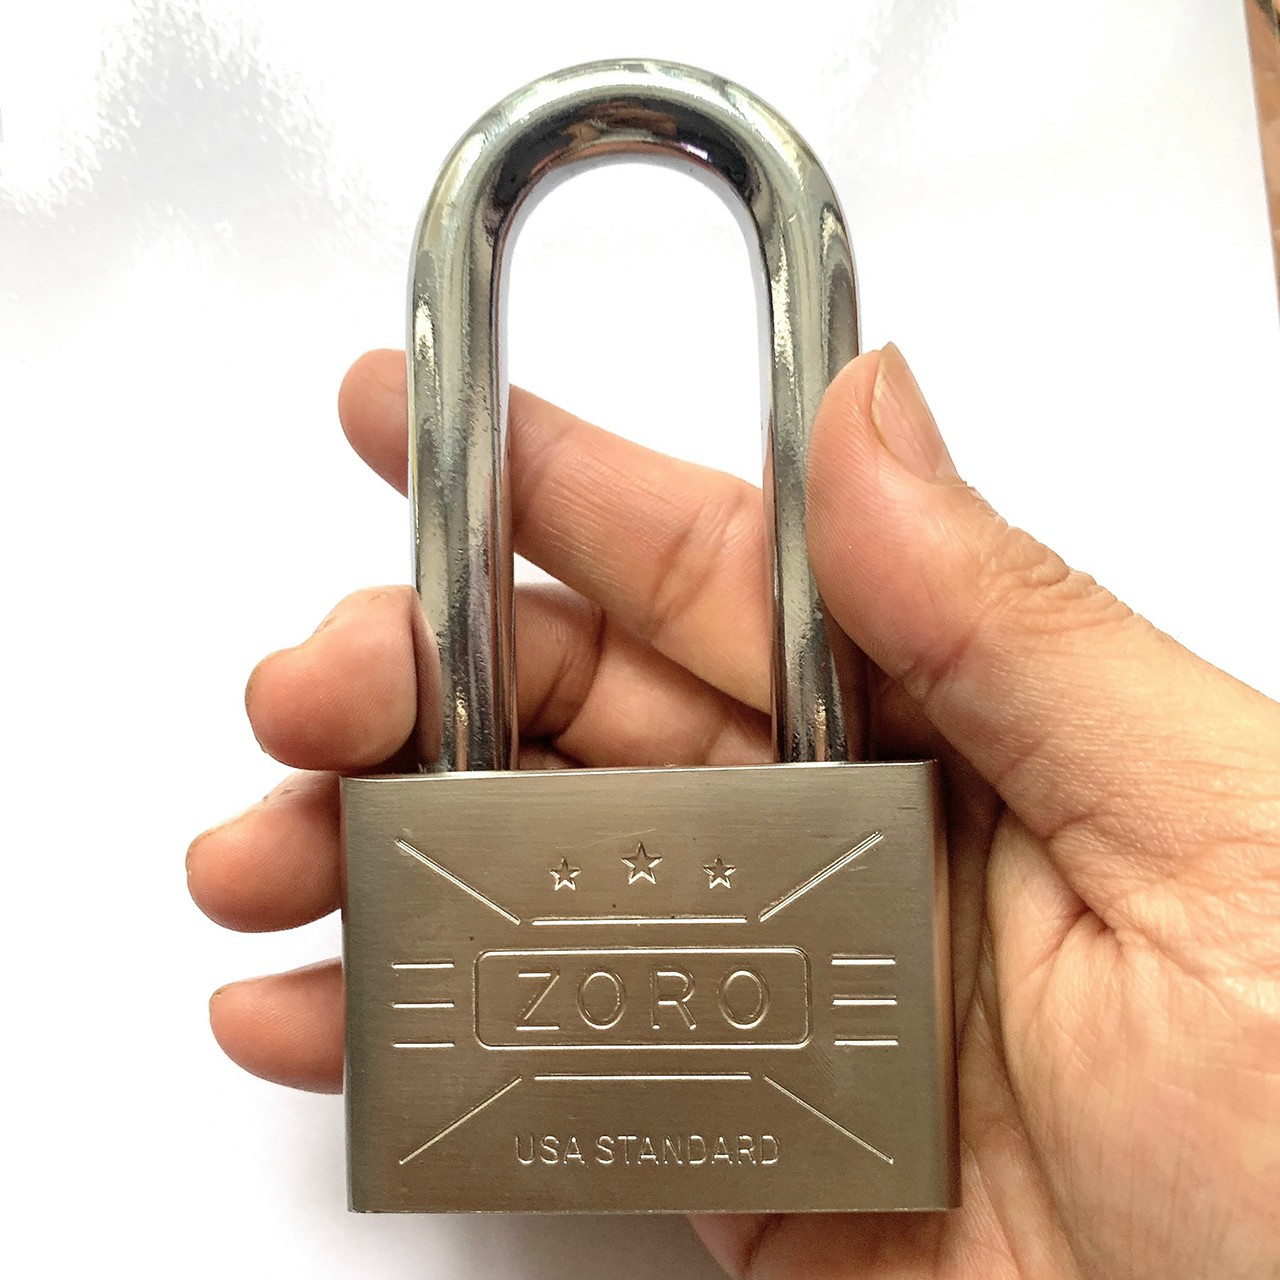 Ổ khóa ZORO 6 phân càng dài,chìa muỗng - khóa bấm không cần chìa, ổ khóa càng dài khóa cửa chống trộm công nghệ mỹ